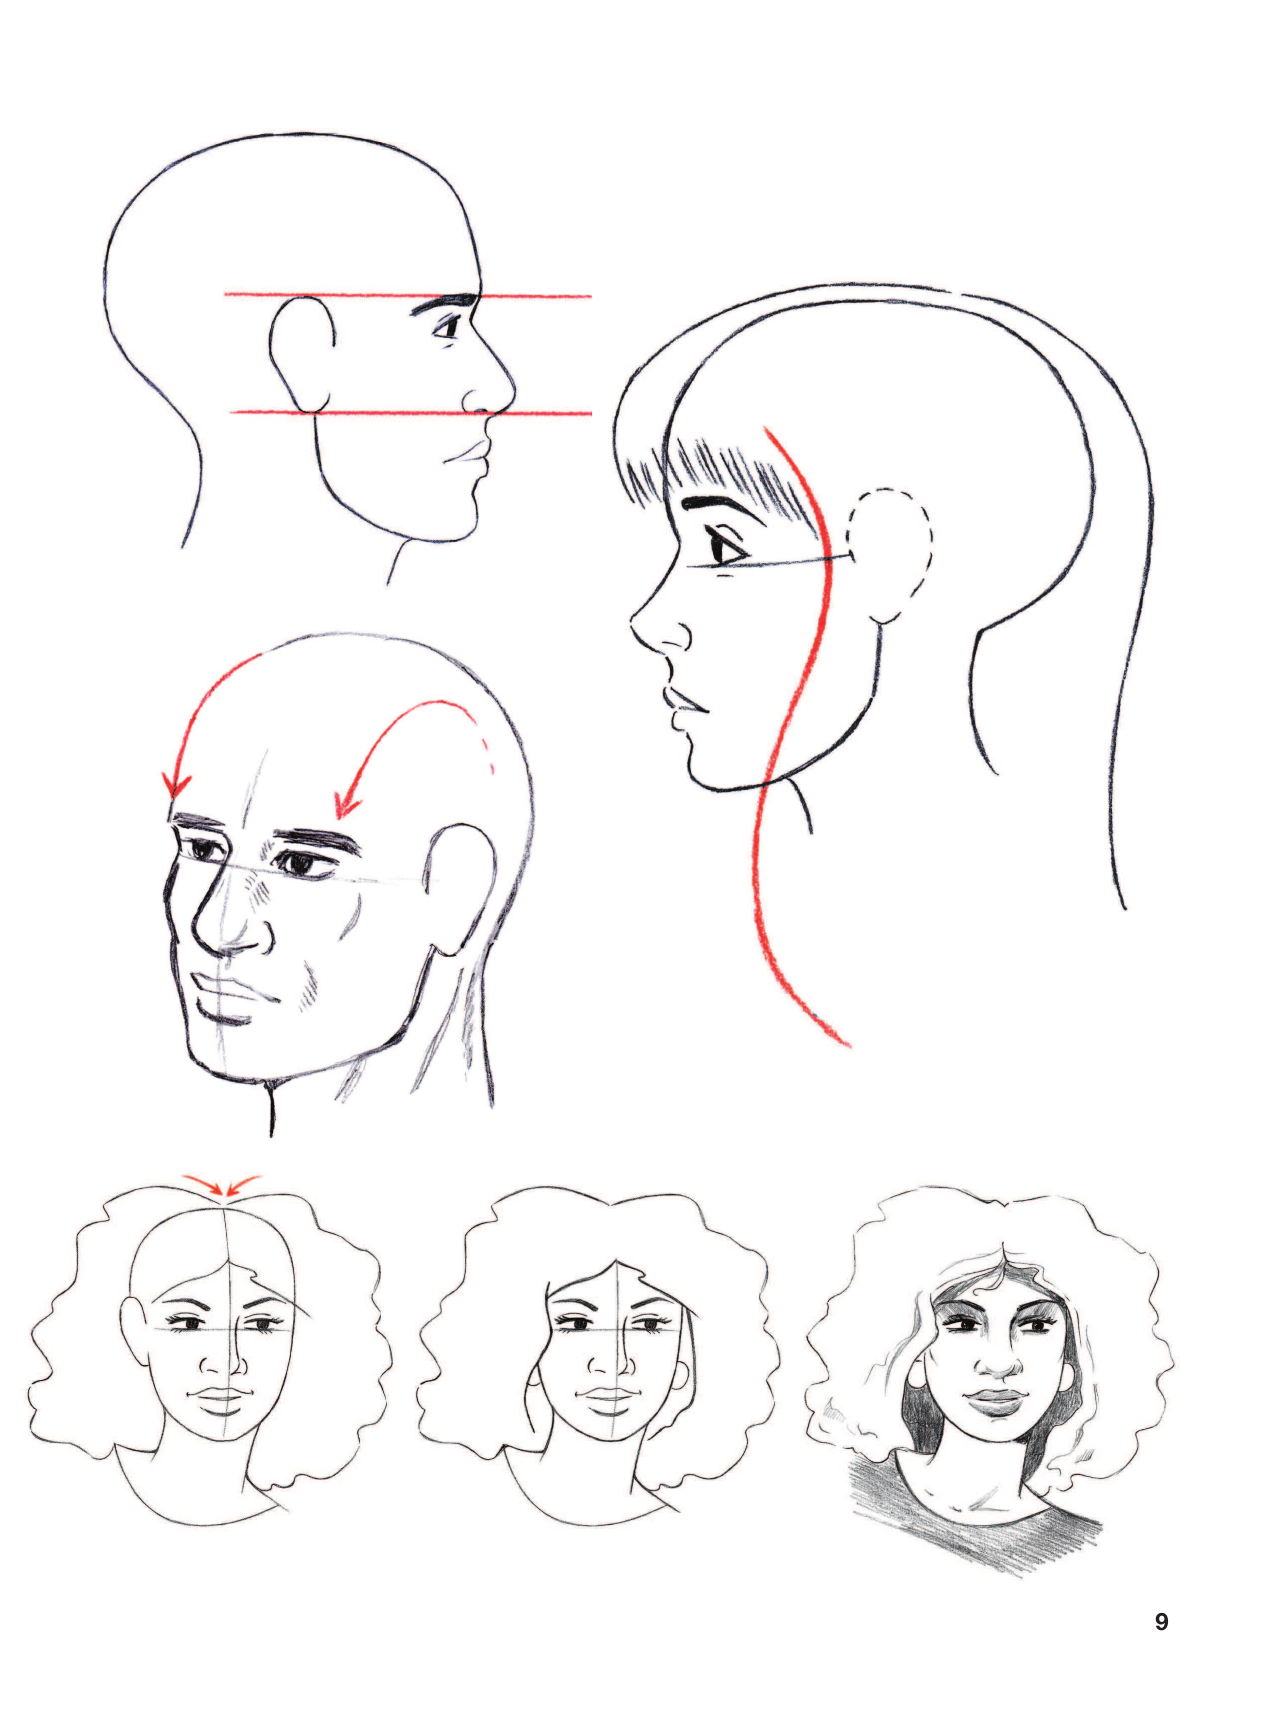 Учимся рисовать лица и эмоции. Руководство по рисованию головы человека - фото №9